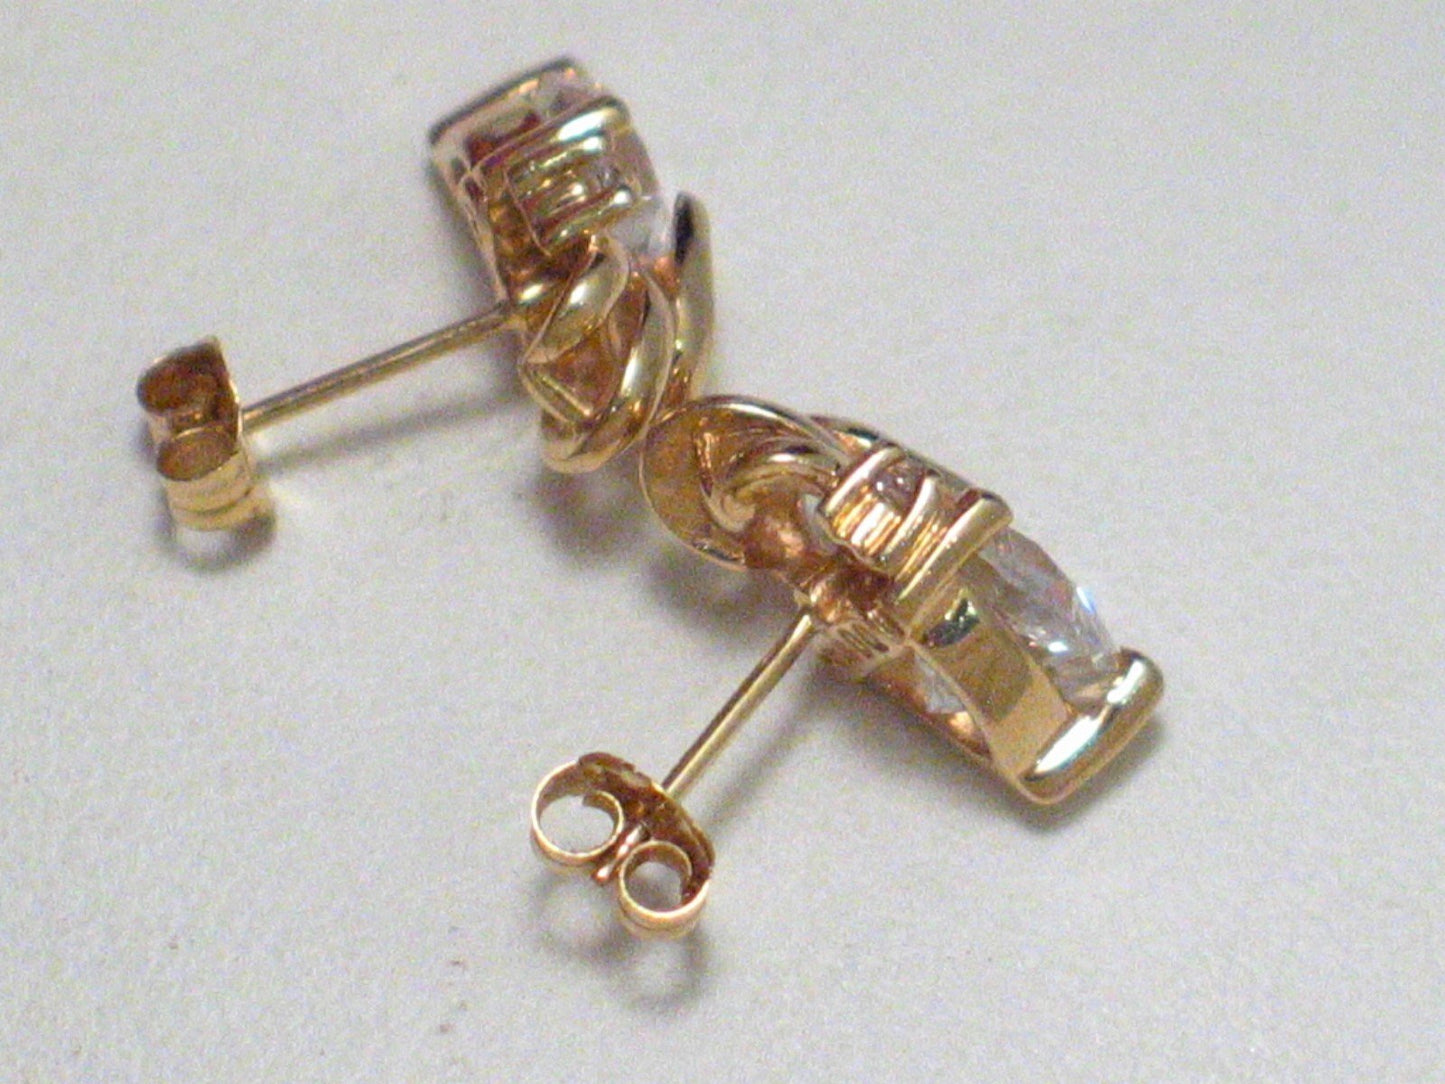 Accessories > Jewelry > Earrings 14k Gold Graceful Ribbons Diamonique Cz Heart Earrings